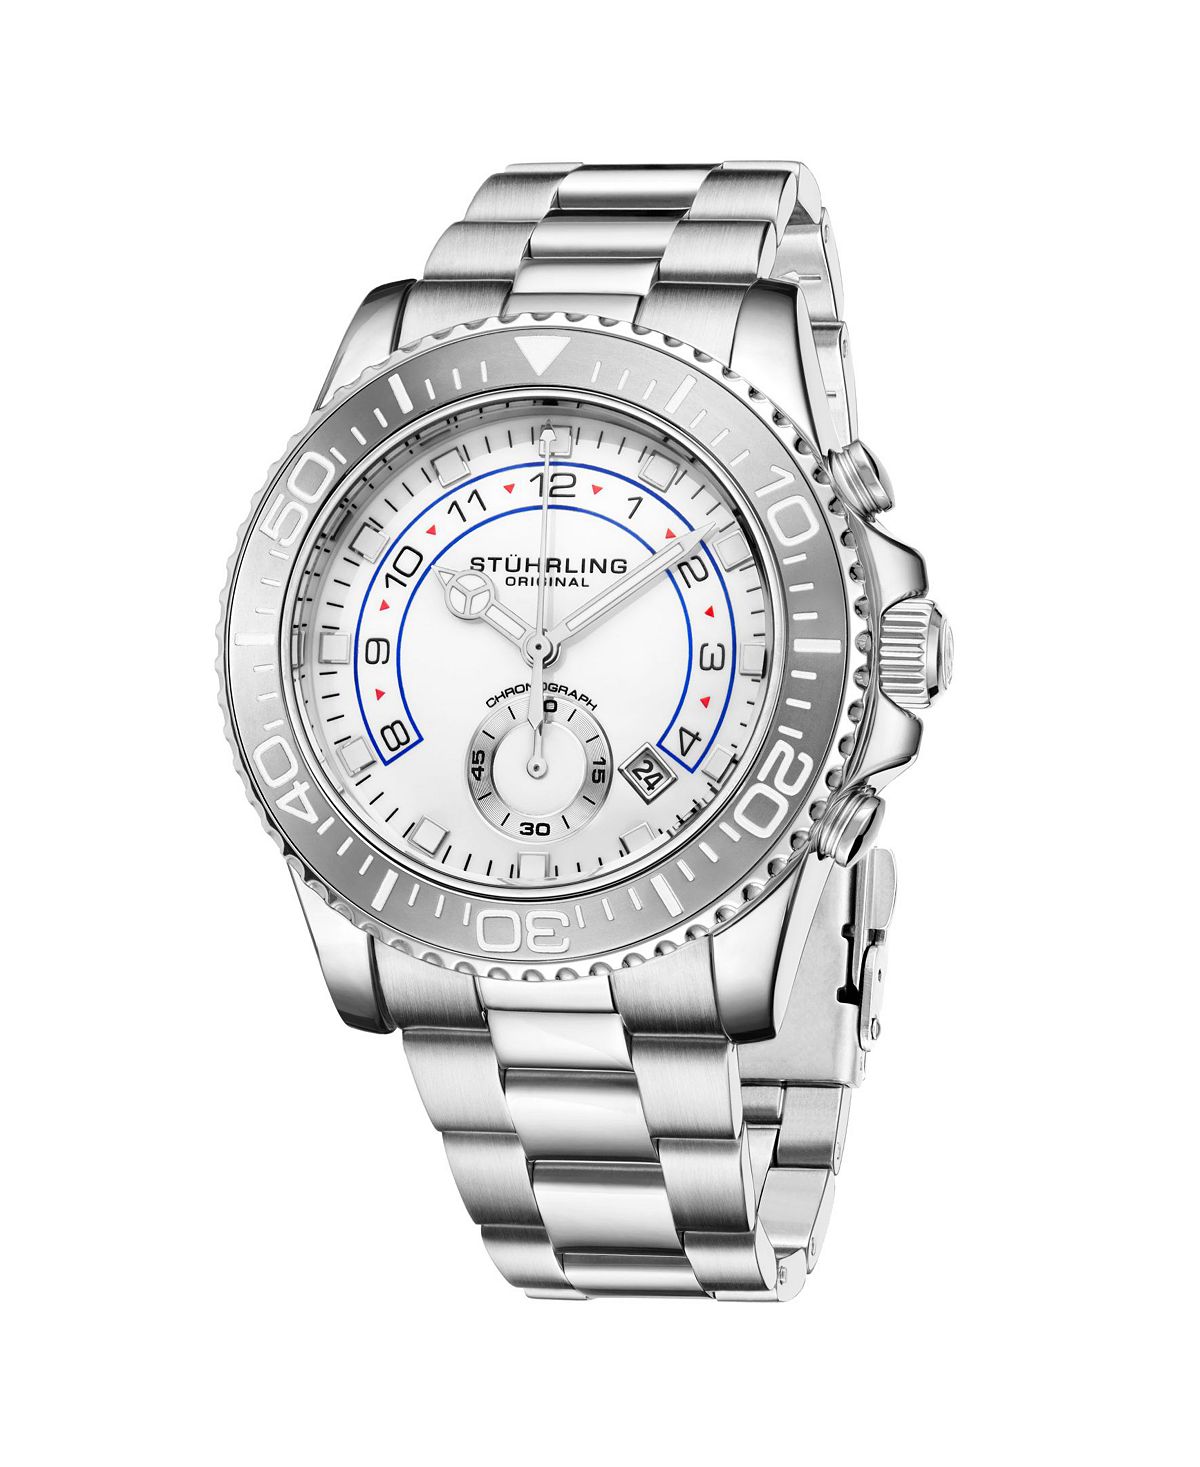 Мужские часы-браслет из нержавеющей стали серебристого цвета, 42 мм Stuhrling женские часы браслет из нержавеющей стали серебристого цвета 39 мм stuhrling серебро